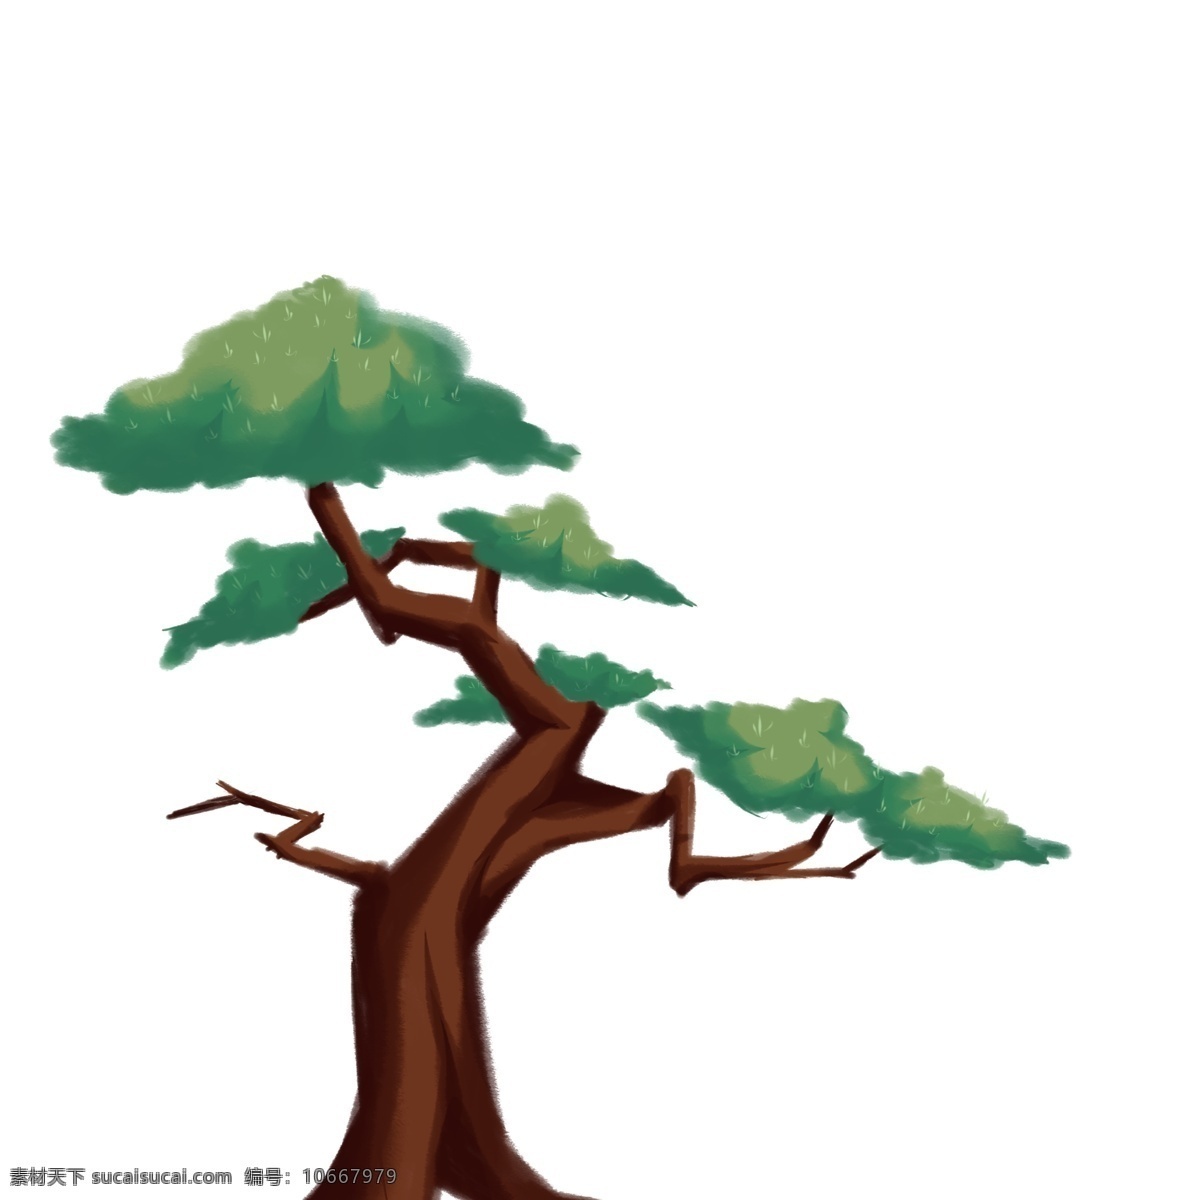 棵 深绿色 的卡 通 树木 卡通 松树 卡通树木 植物 卡通植物 一棵树木 松柏树 高纬度 手绘 绿色松树